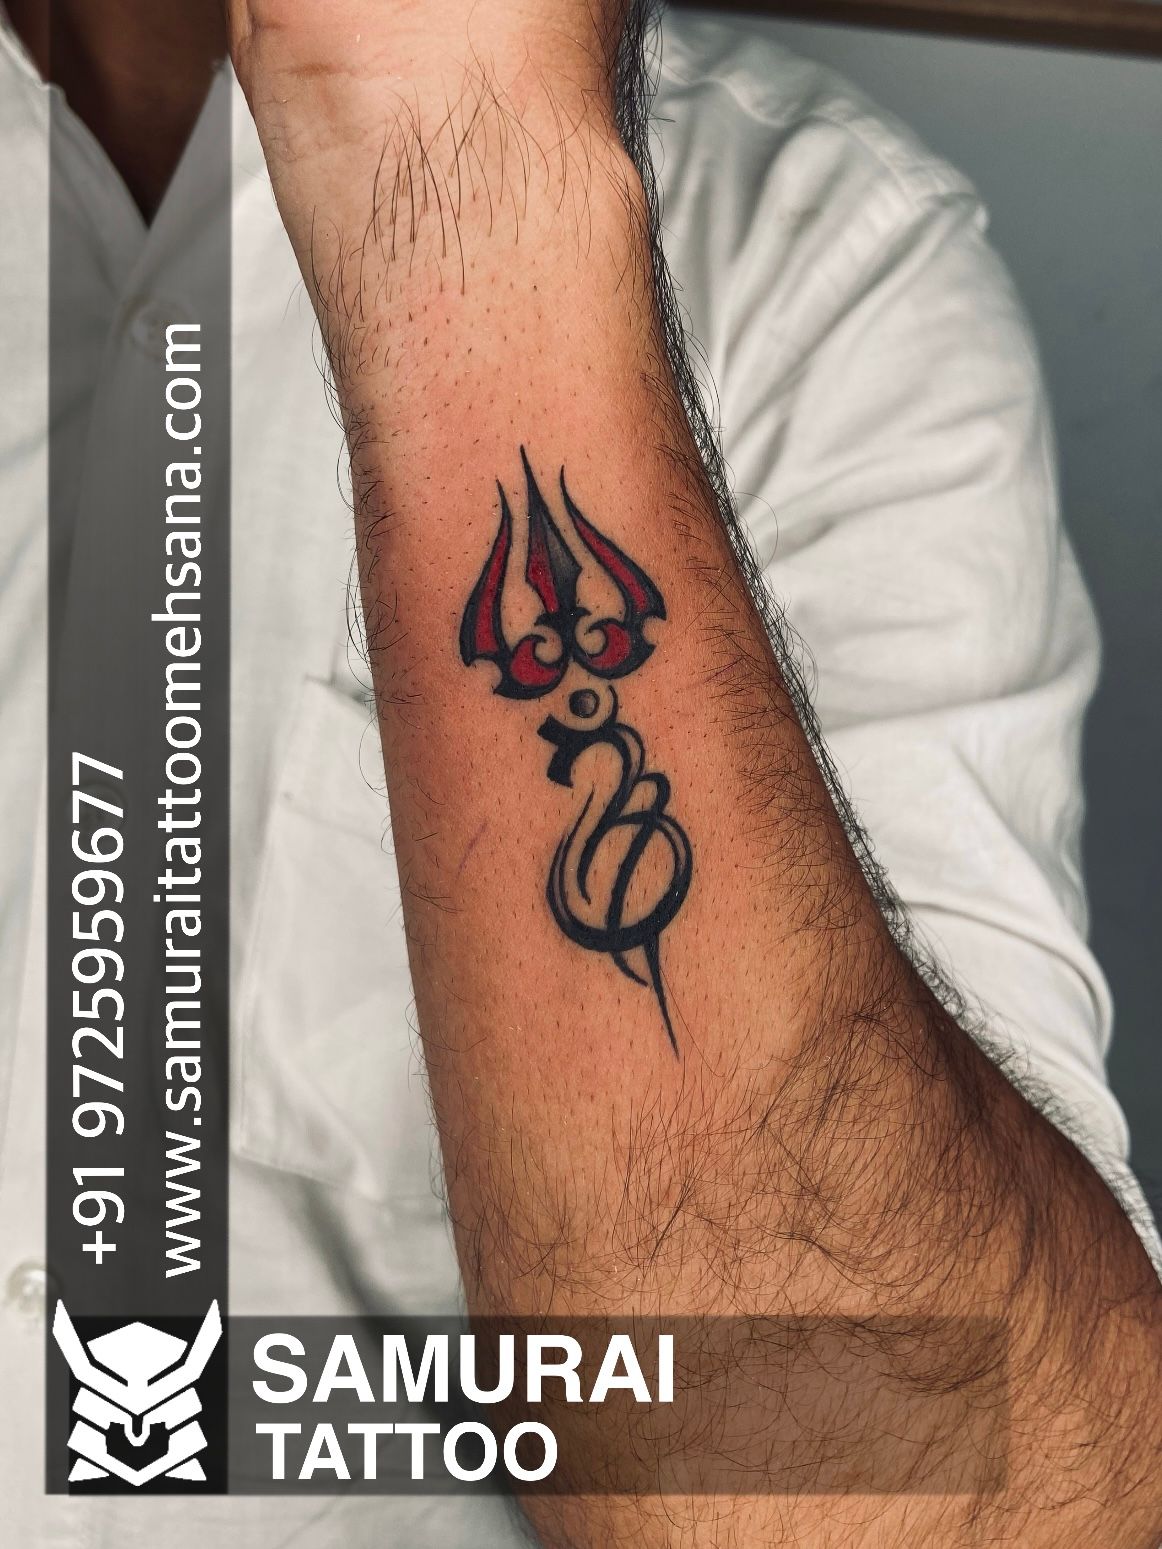 Lord Shiva Tattoos - Dreamlife Arts Tattoo